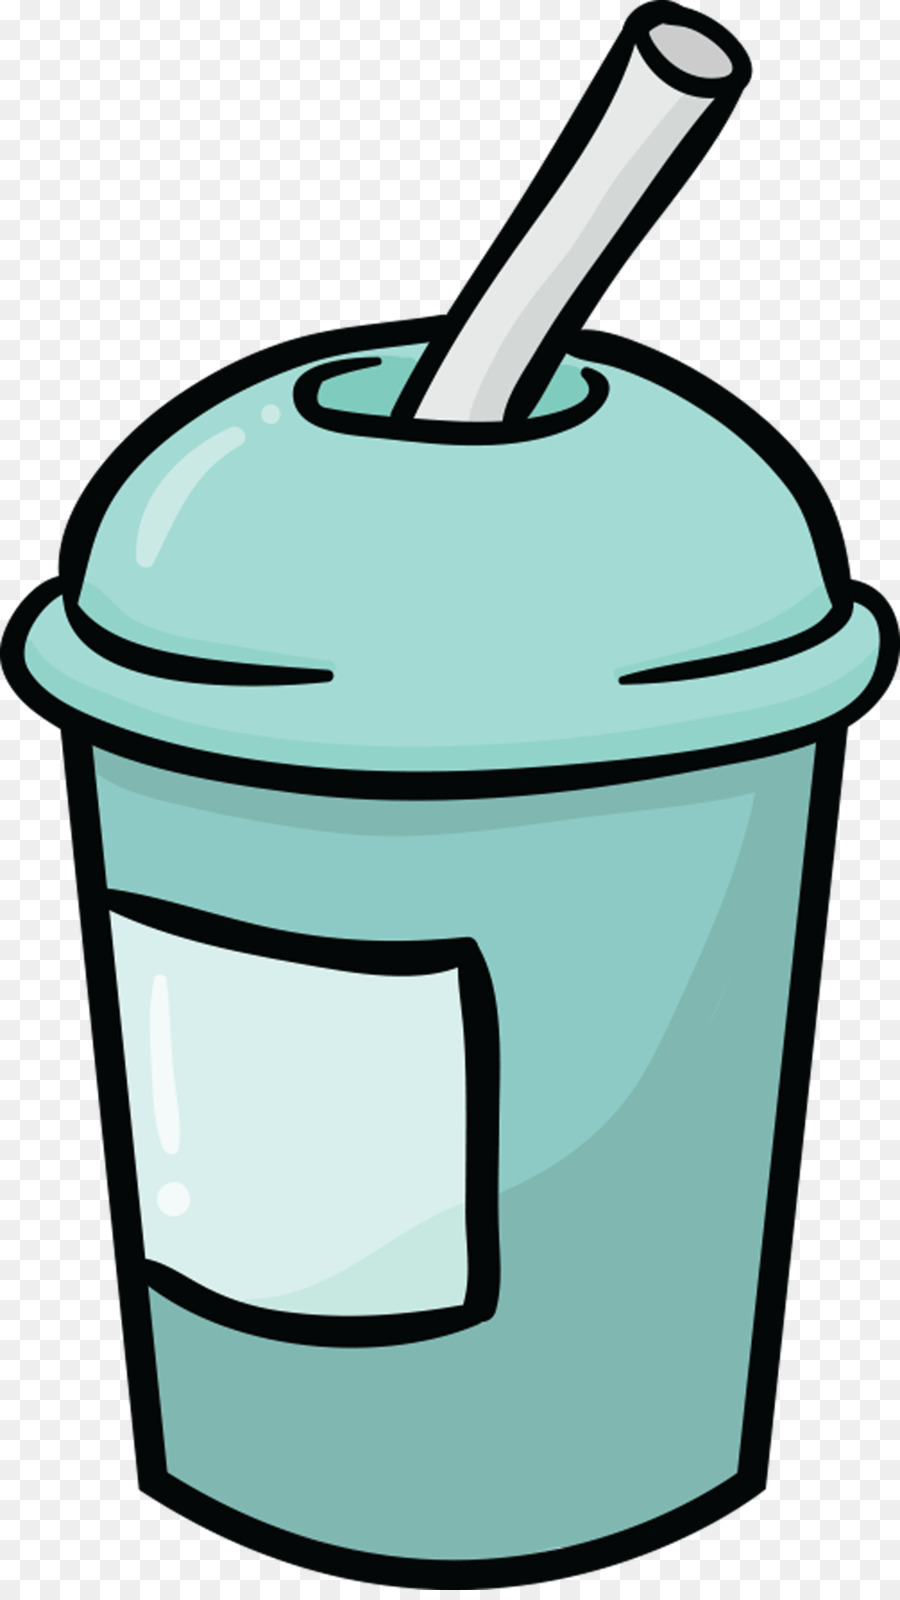 Kohlensäurehaltige Getränke, Smoothie-Strohhalm-Cup Clip art - Milchshake clipart